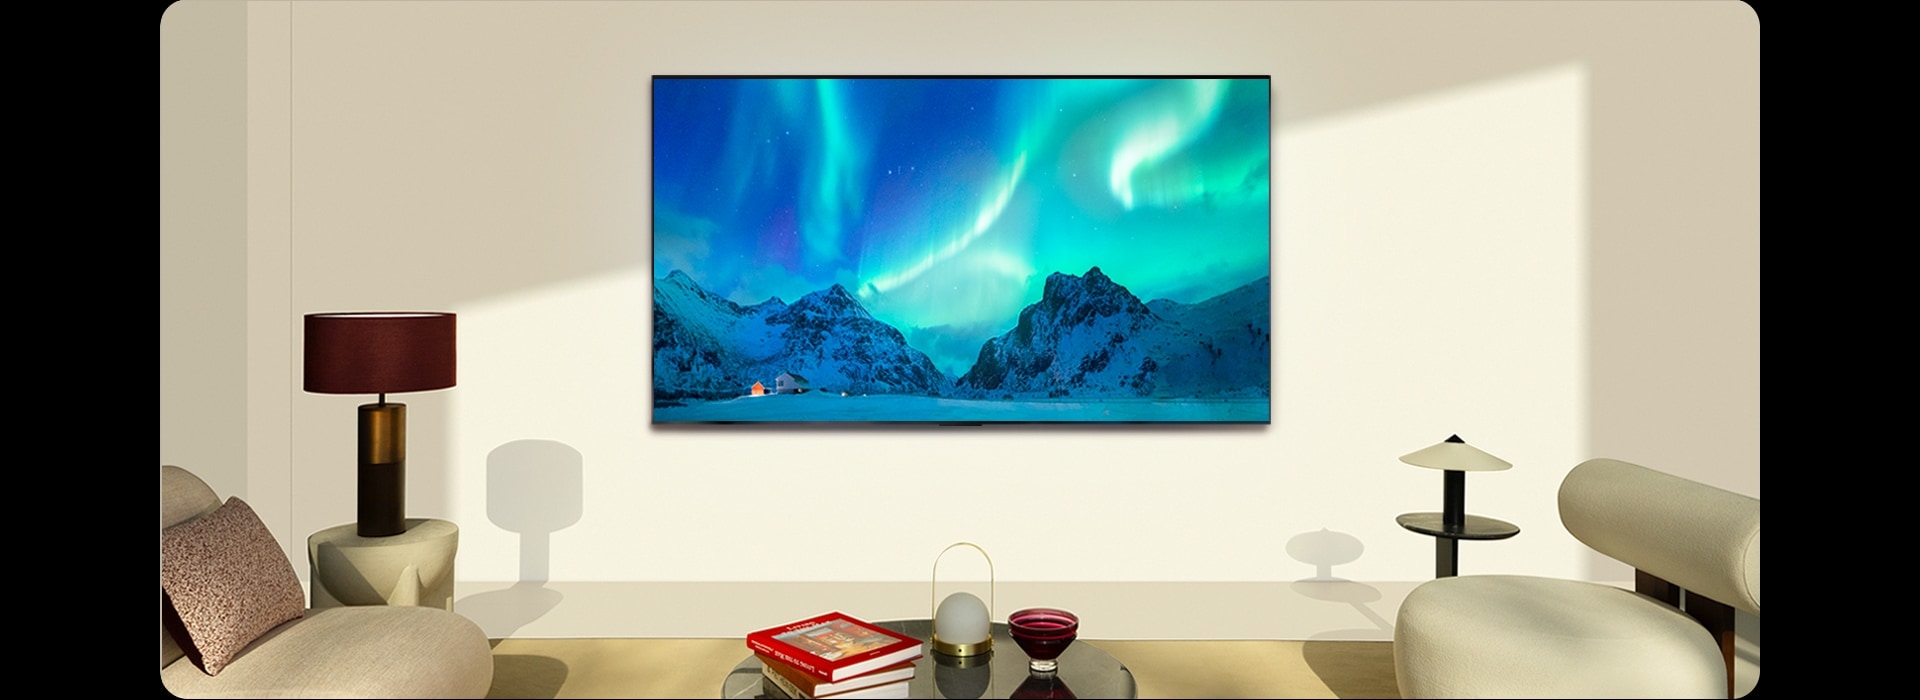 TV LG OLED en un espacio moderno durante el día. La imagen en pantalla de la aurora boreal se muestra con los niveles de brillo ideales.